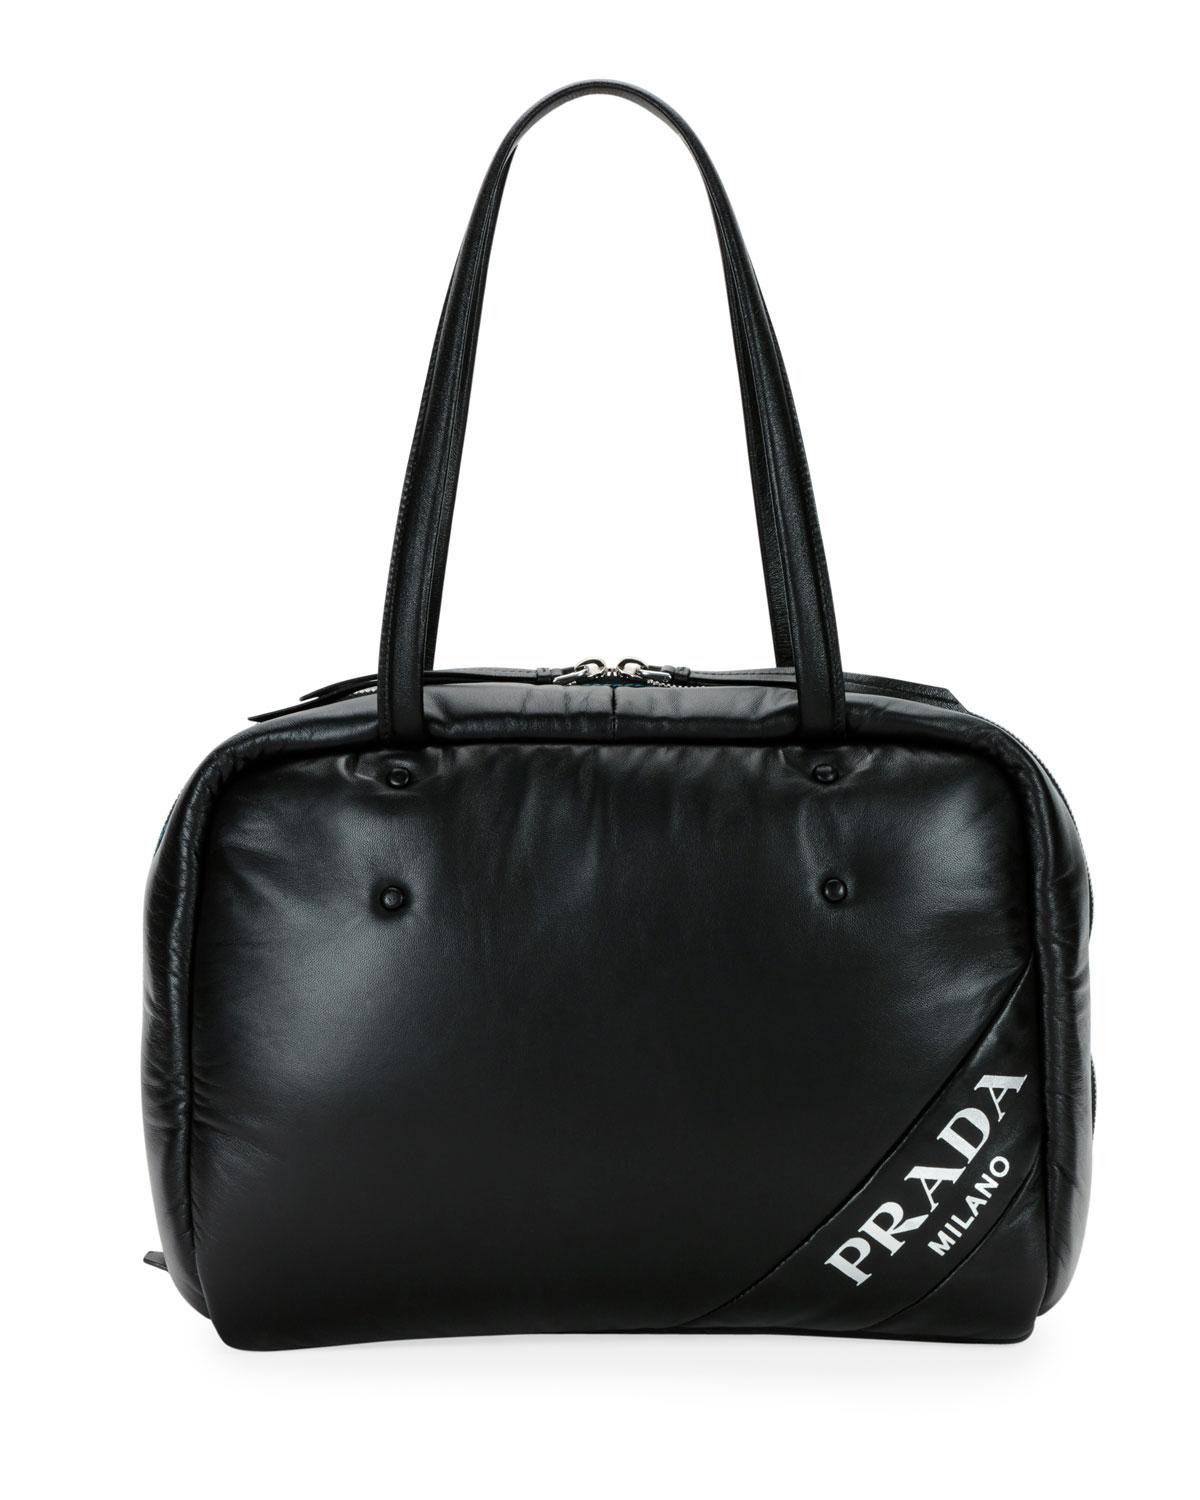 Prada Soft Leather Shoulder Bag in Black - Lyst